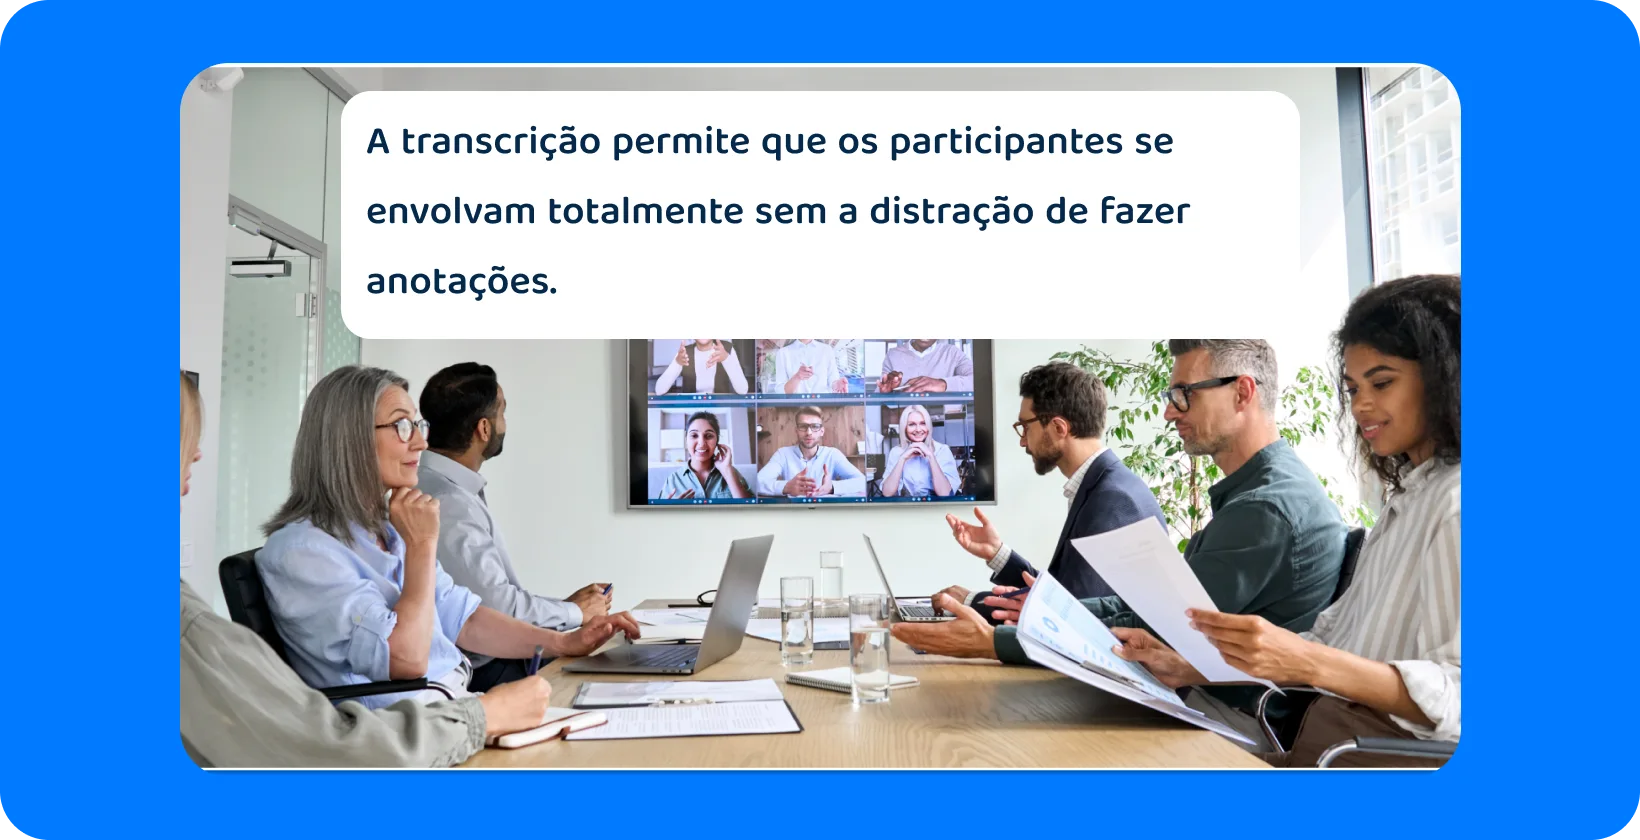 Reunião de equipe com participantes presenciais e virtuais, destacando a necessidade de transcrição abrangente.